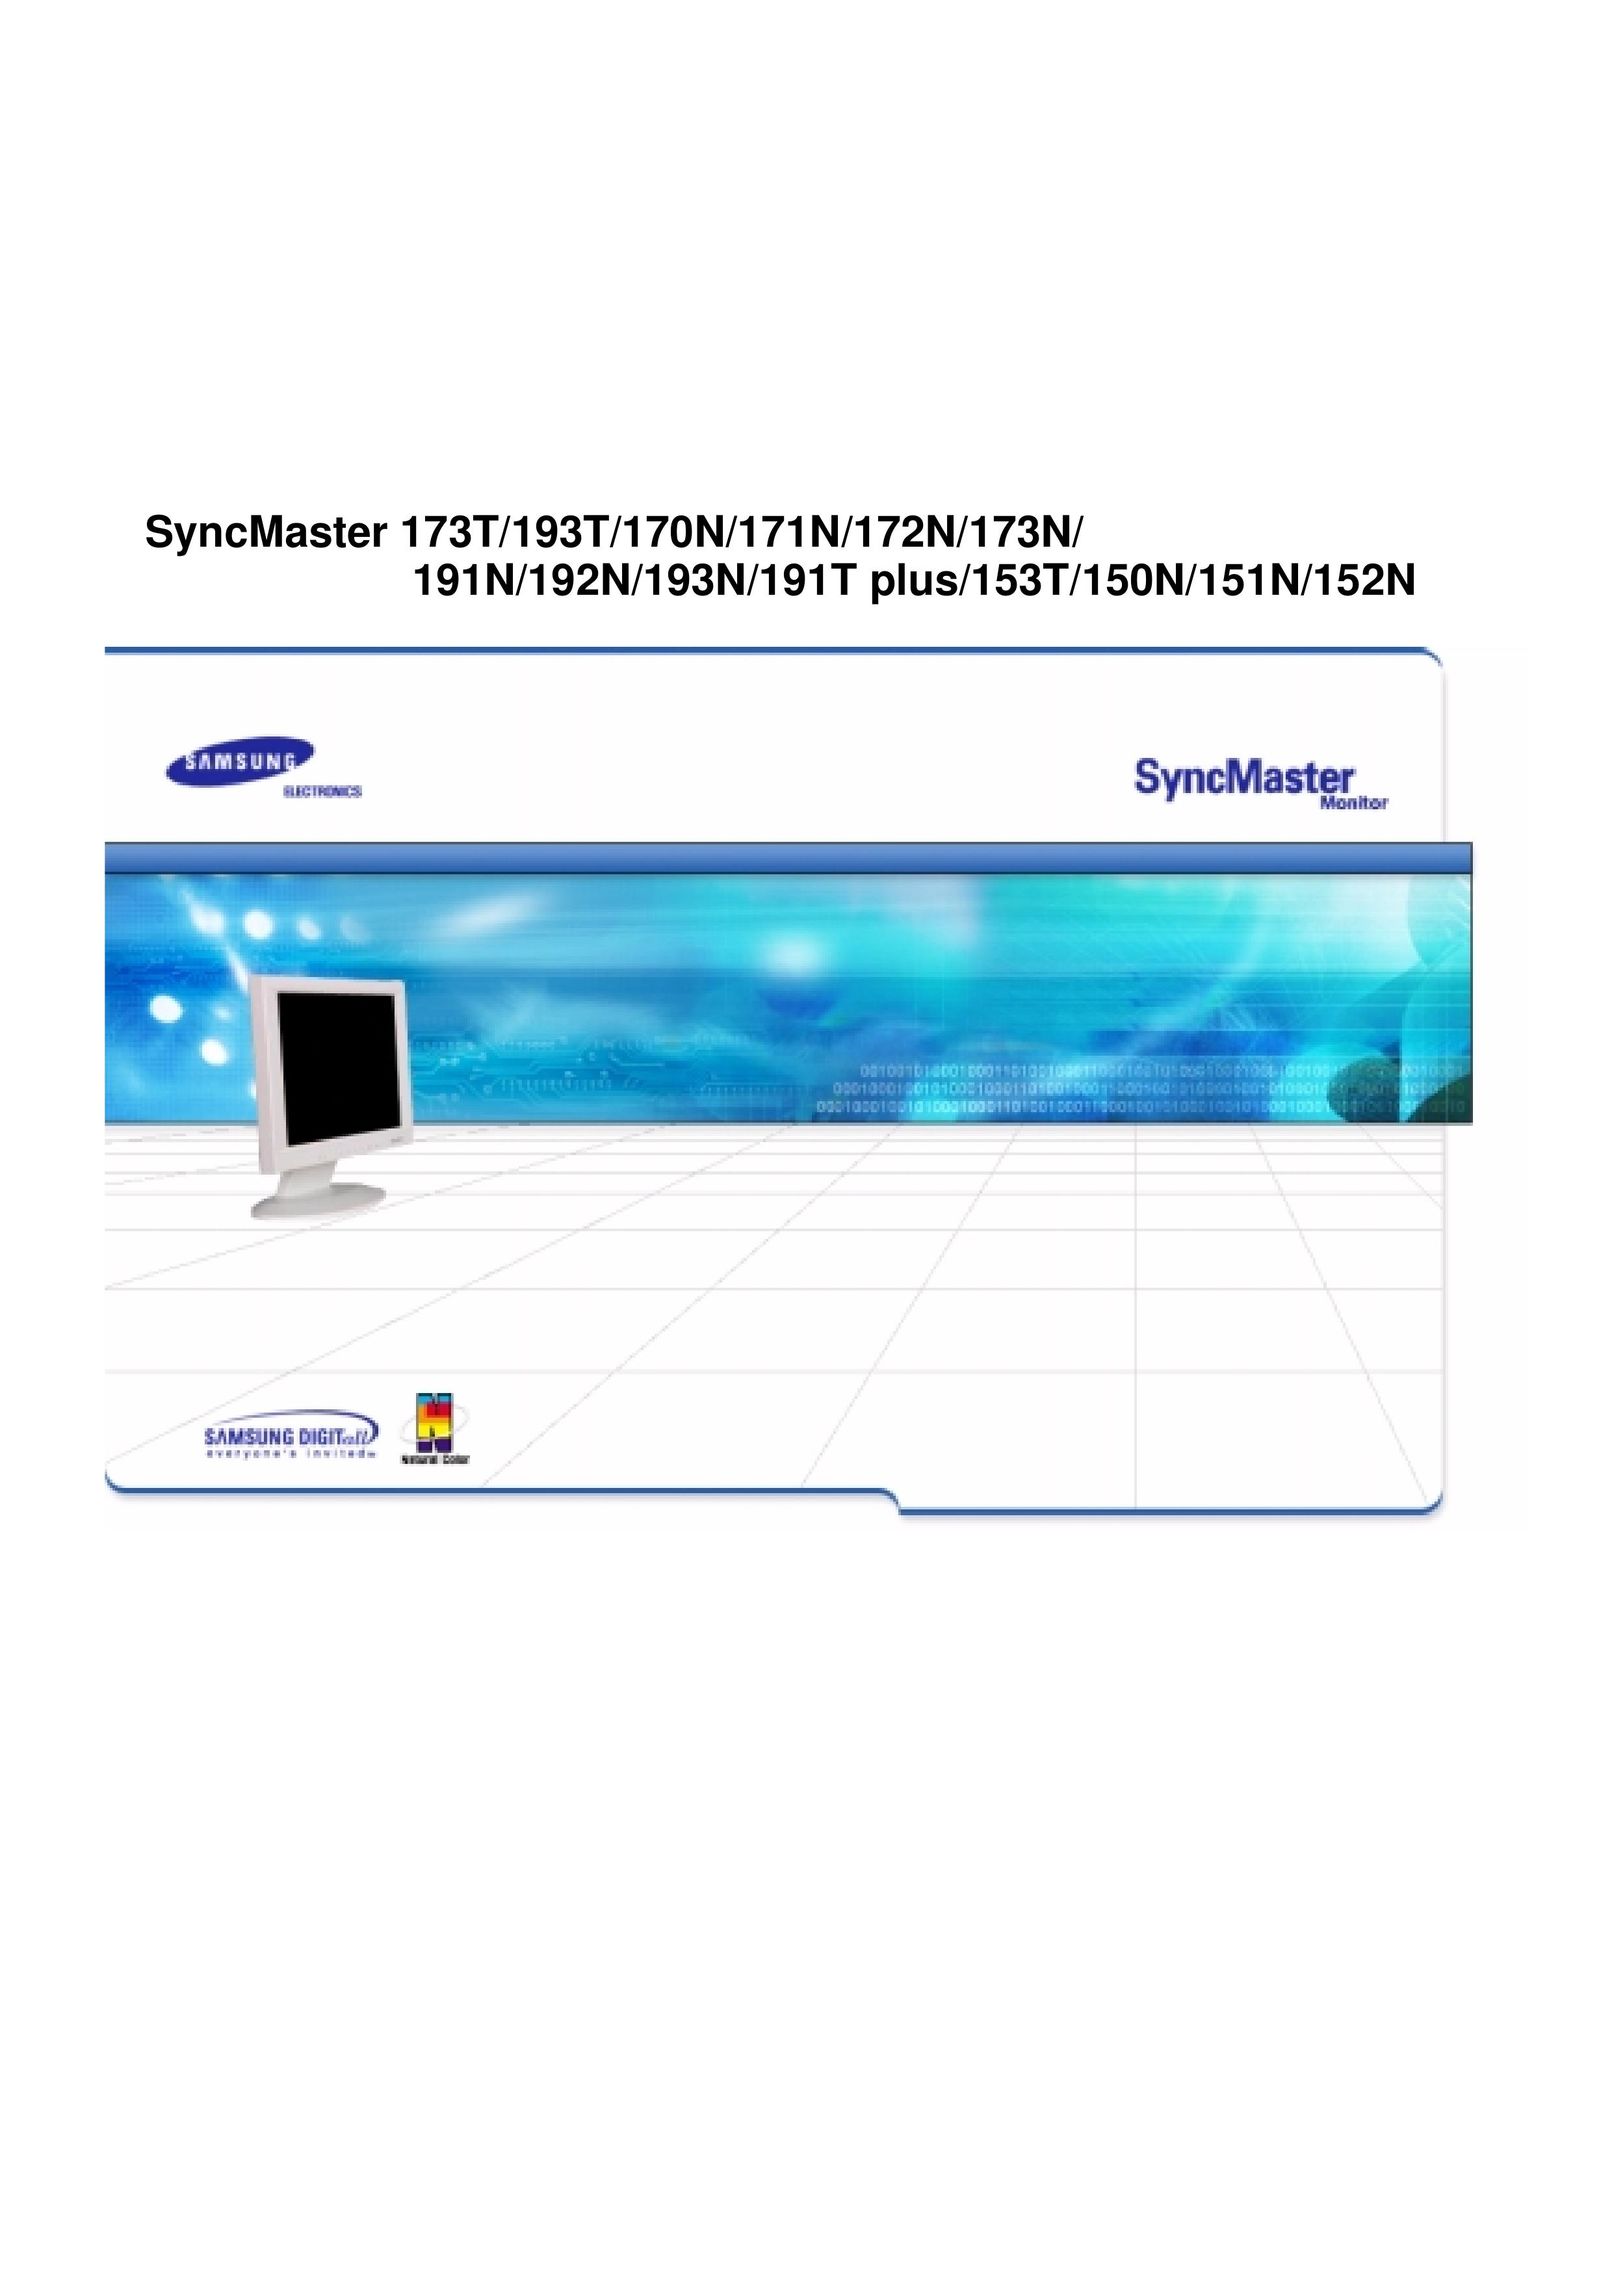 Samsung 151N Computer Monitor User Manual